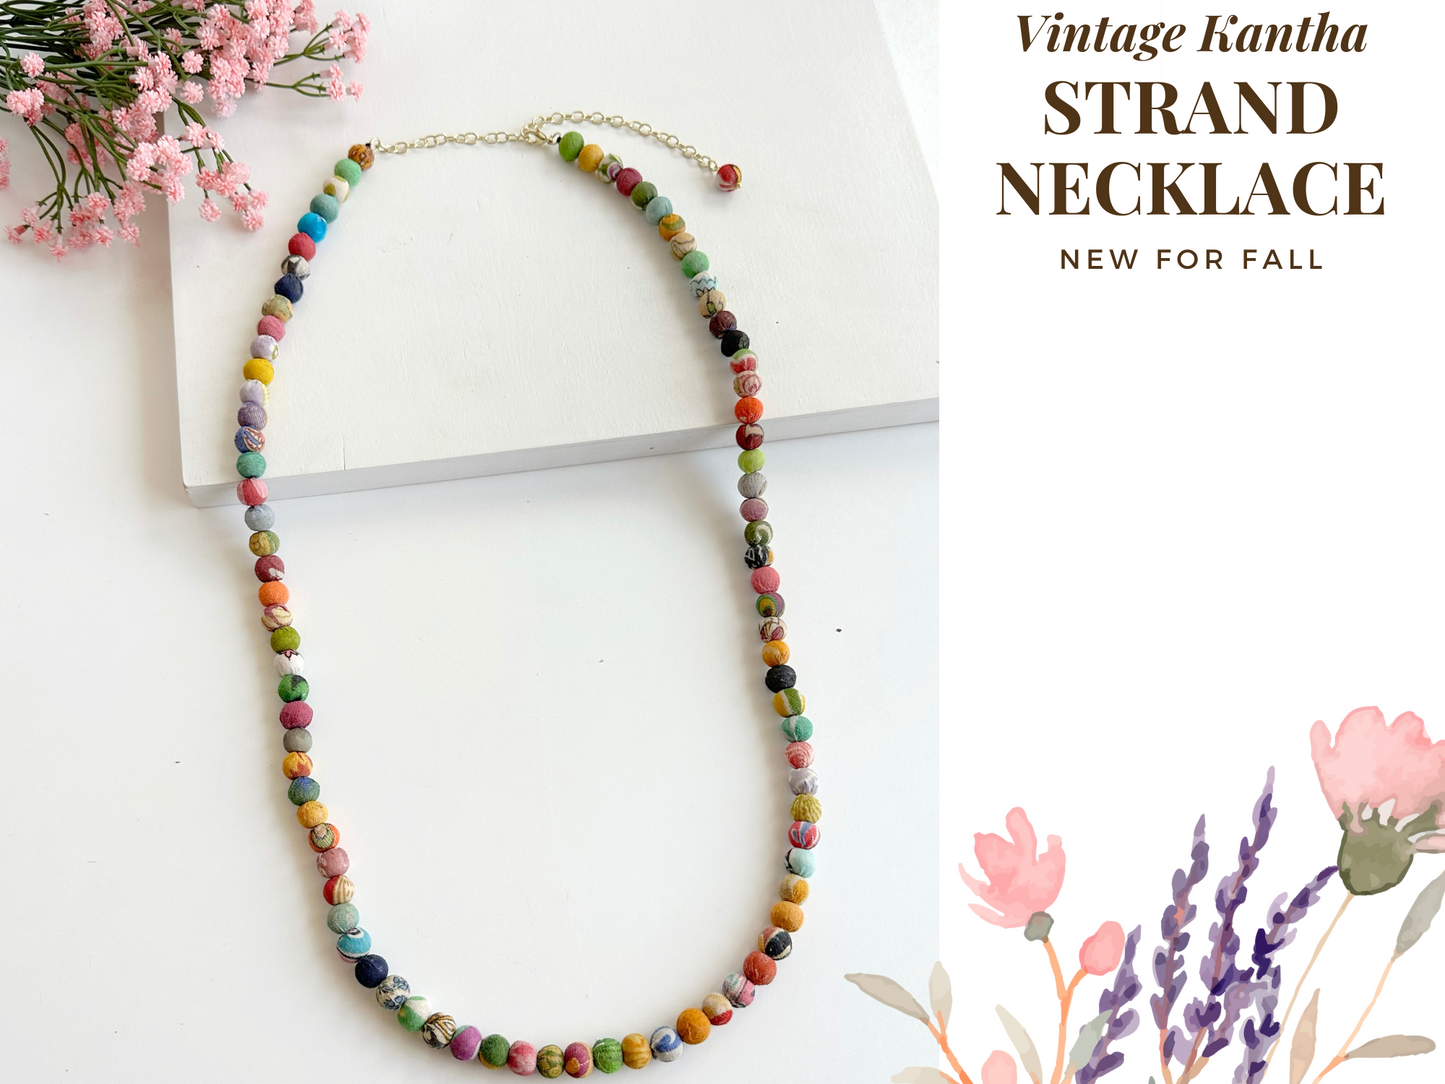 33" Vintage Kantha Strand Necklace